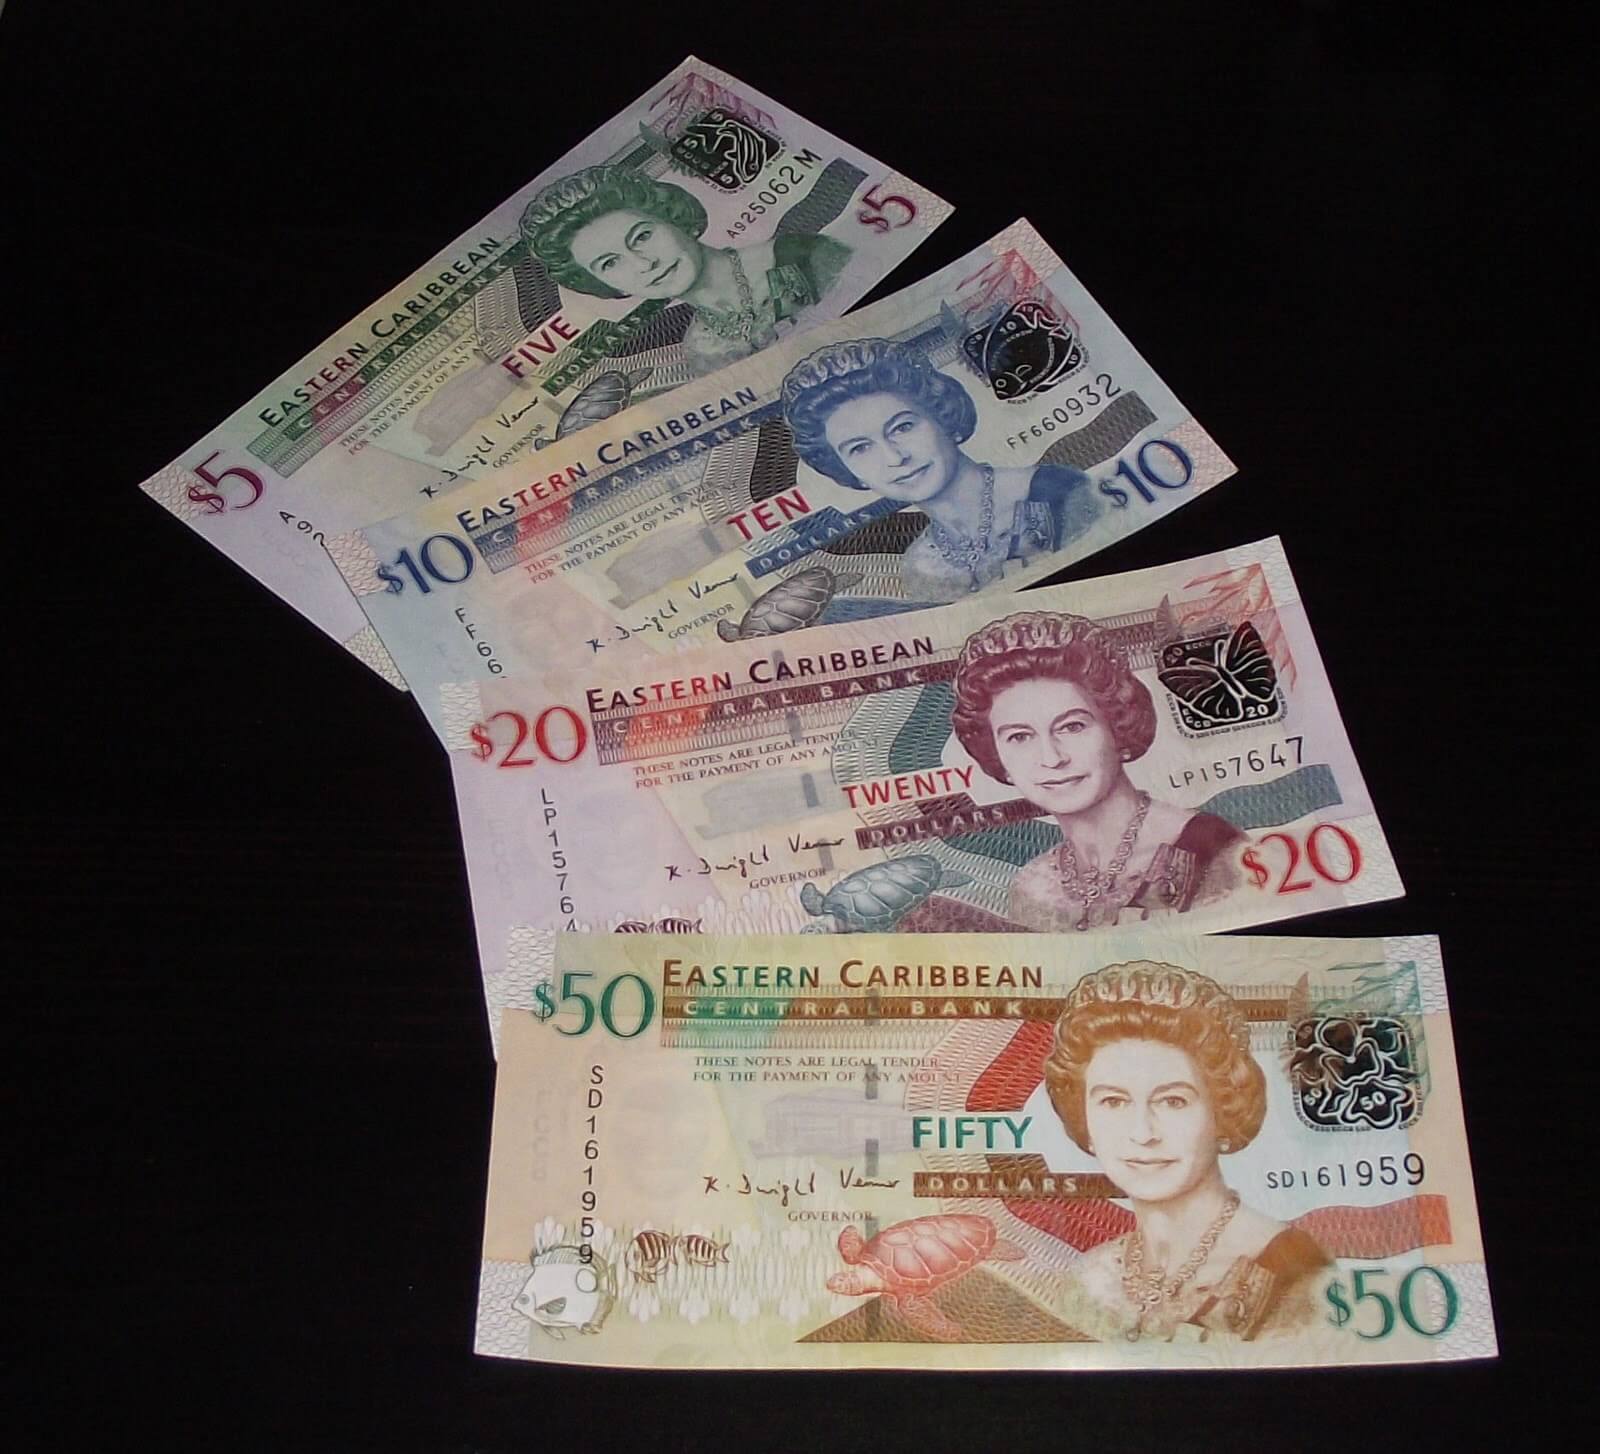 The Eastern Caribbean dollar.